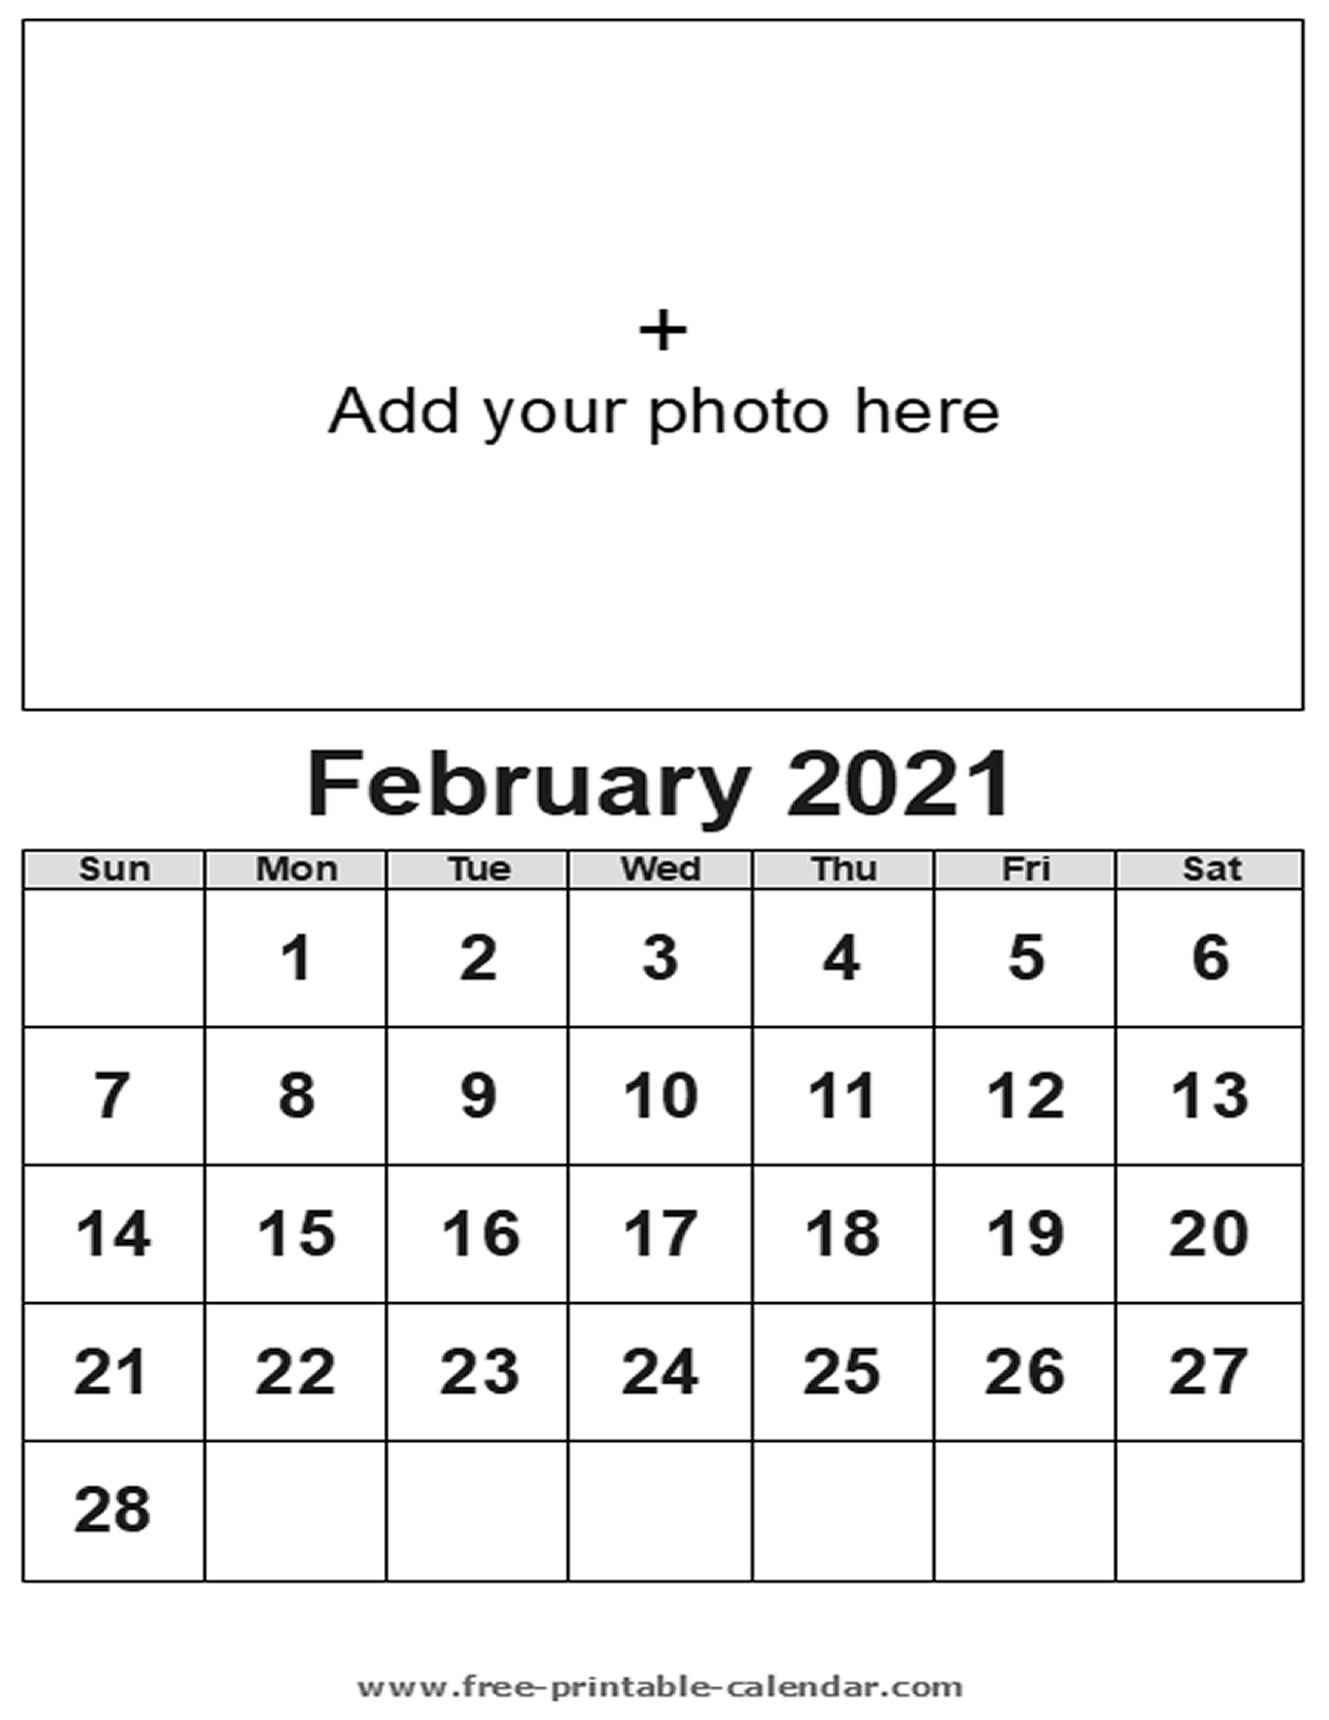 February Calendar 2021 - Free-Printable-Calendar February To June 2021 Calendar